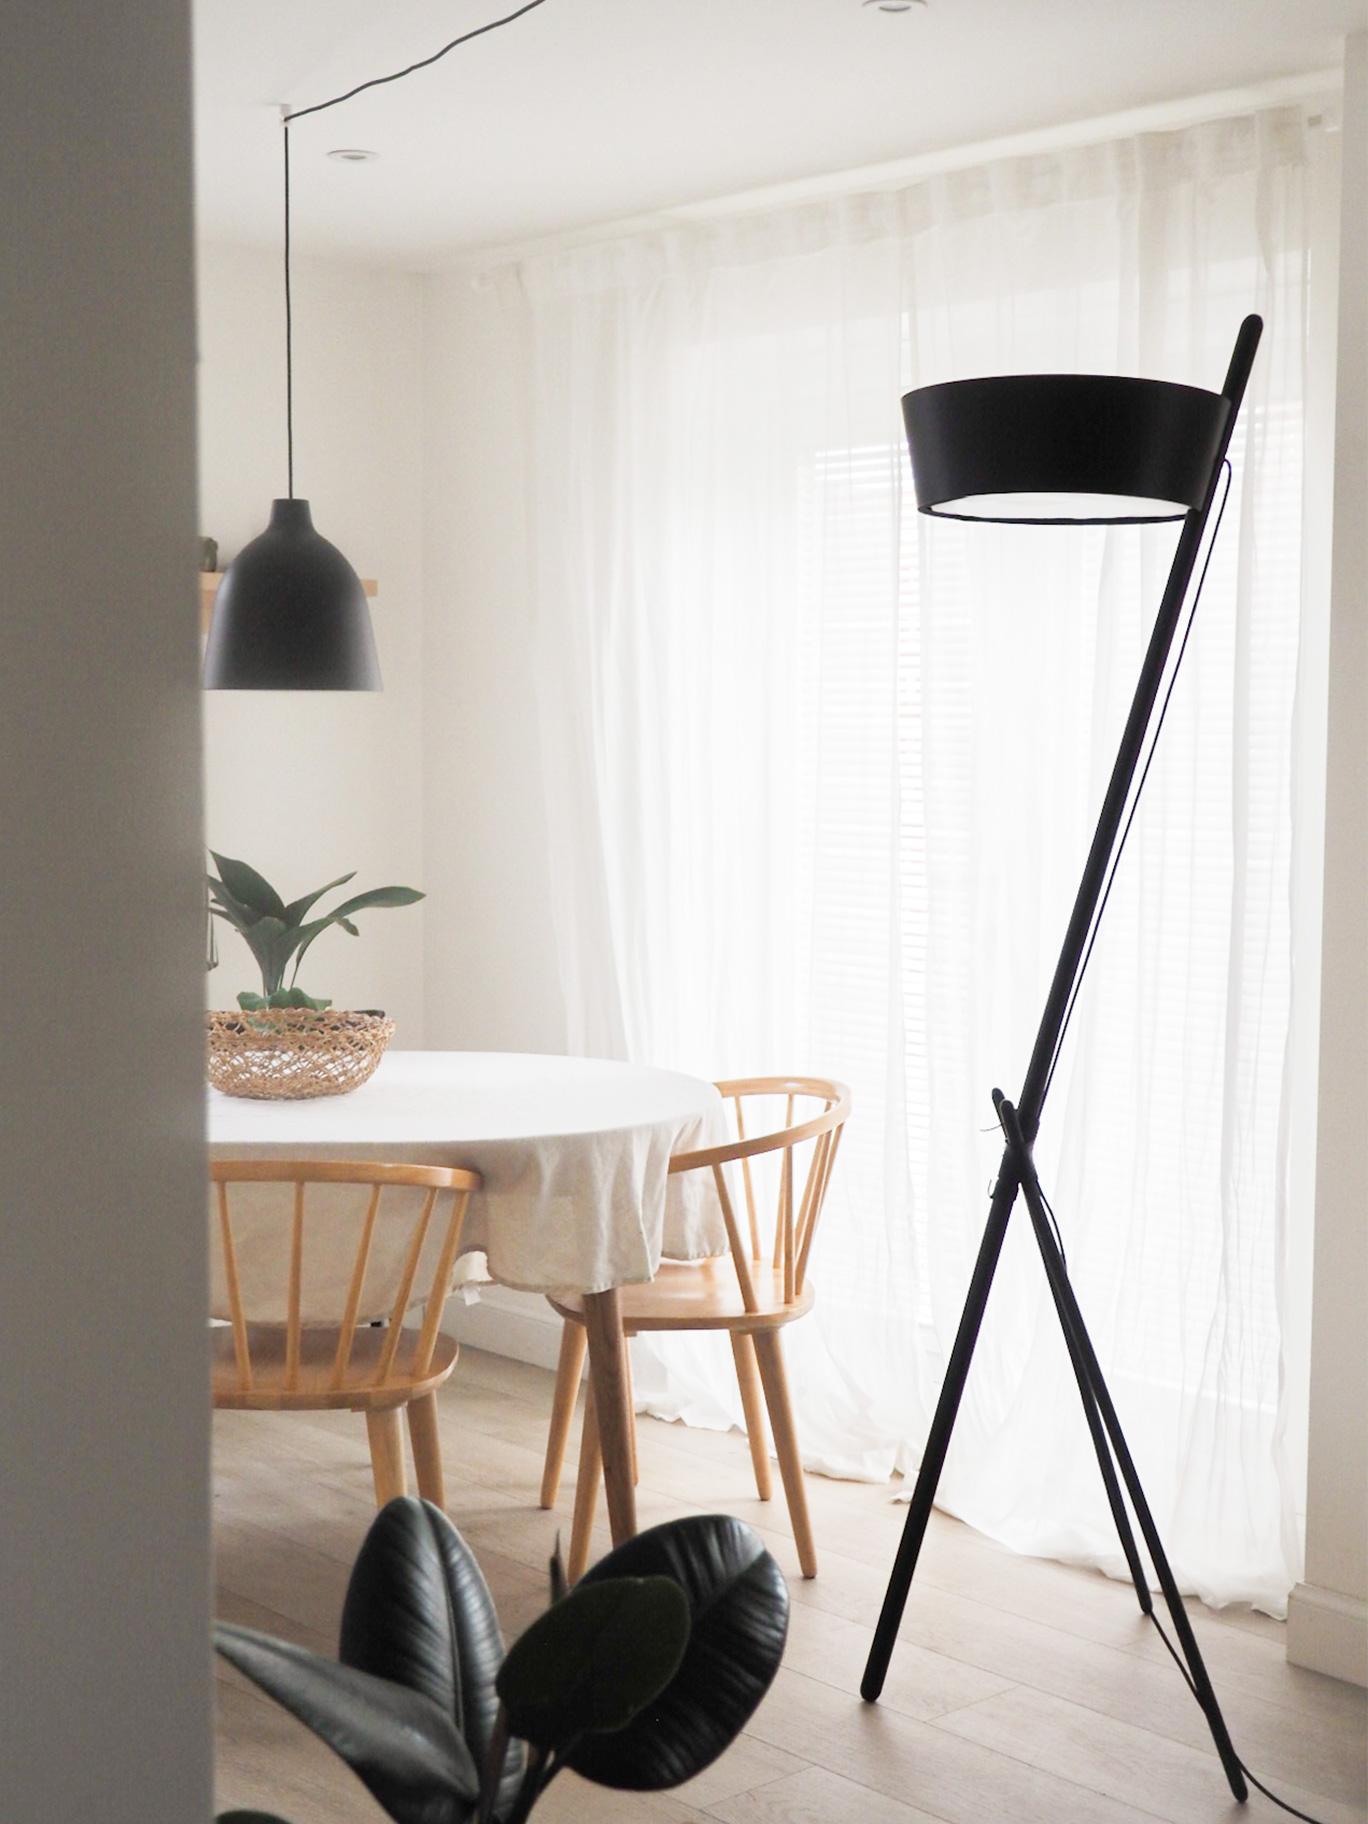 Le plus grand de la famille Ka est un lampadaire sur pied qui rayonne pour sa lumière ambiante.

Combinez le bois de qualité, le design, l'élégance et la lumière et le résultat sera notre lampadaire en bois de couleur noire. Tout ce dont votre